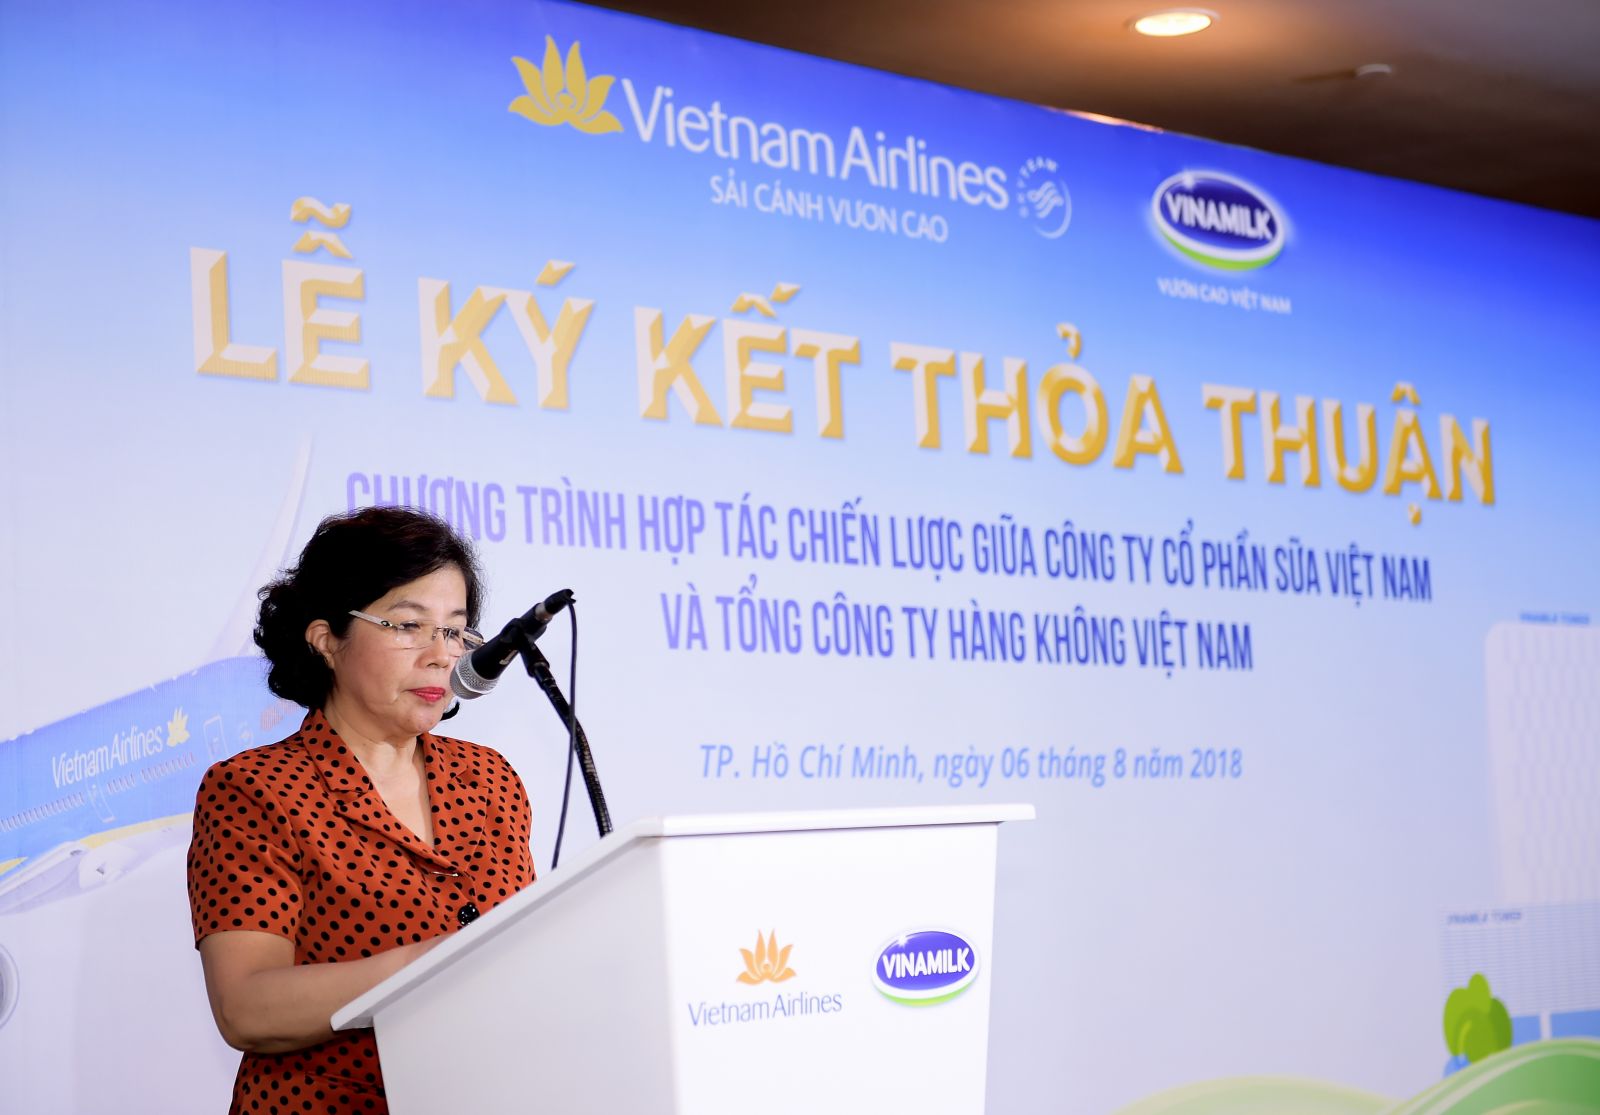 Bà Mai Kiều Liên – Thành viên HĐQT, Tổng Giám đốc Vinamilk phát biểu tại buổi lễ ký kết (Ảnh: Lý Võ Phú Hưng)